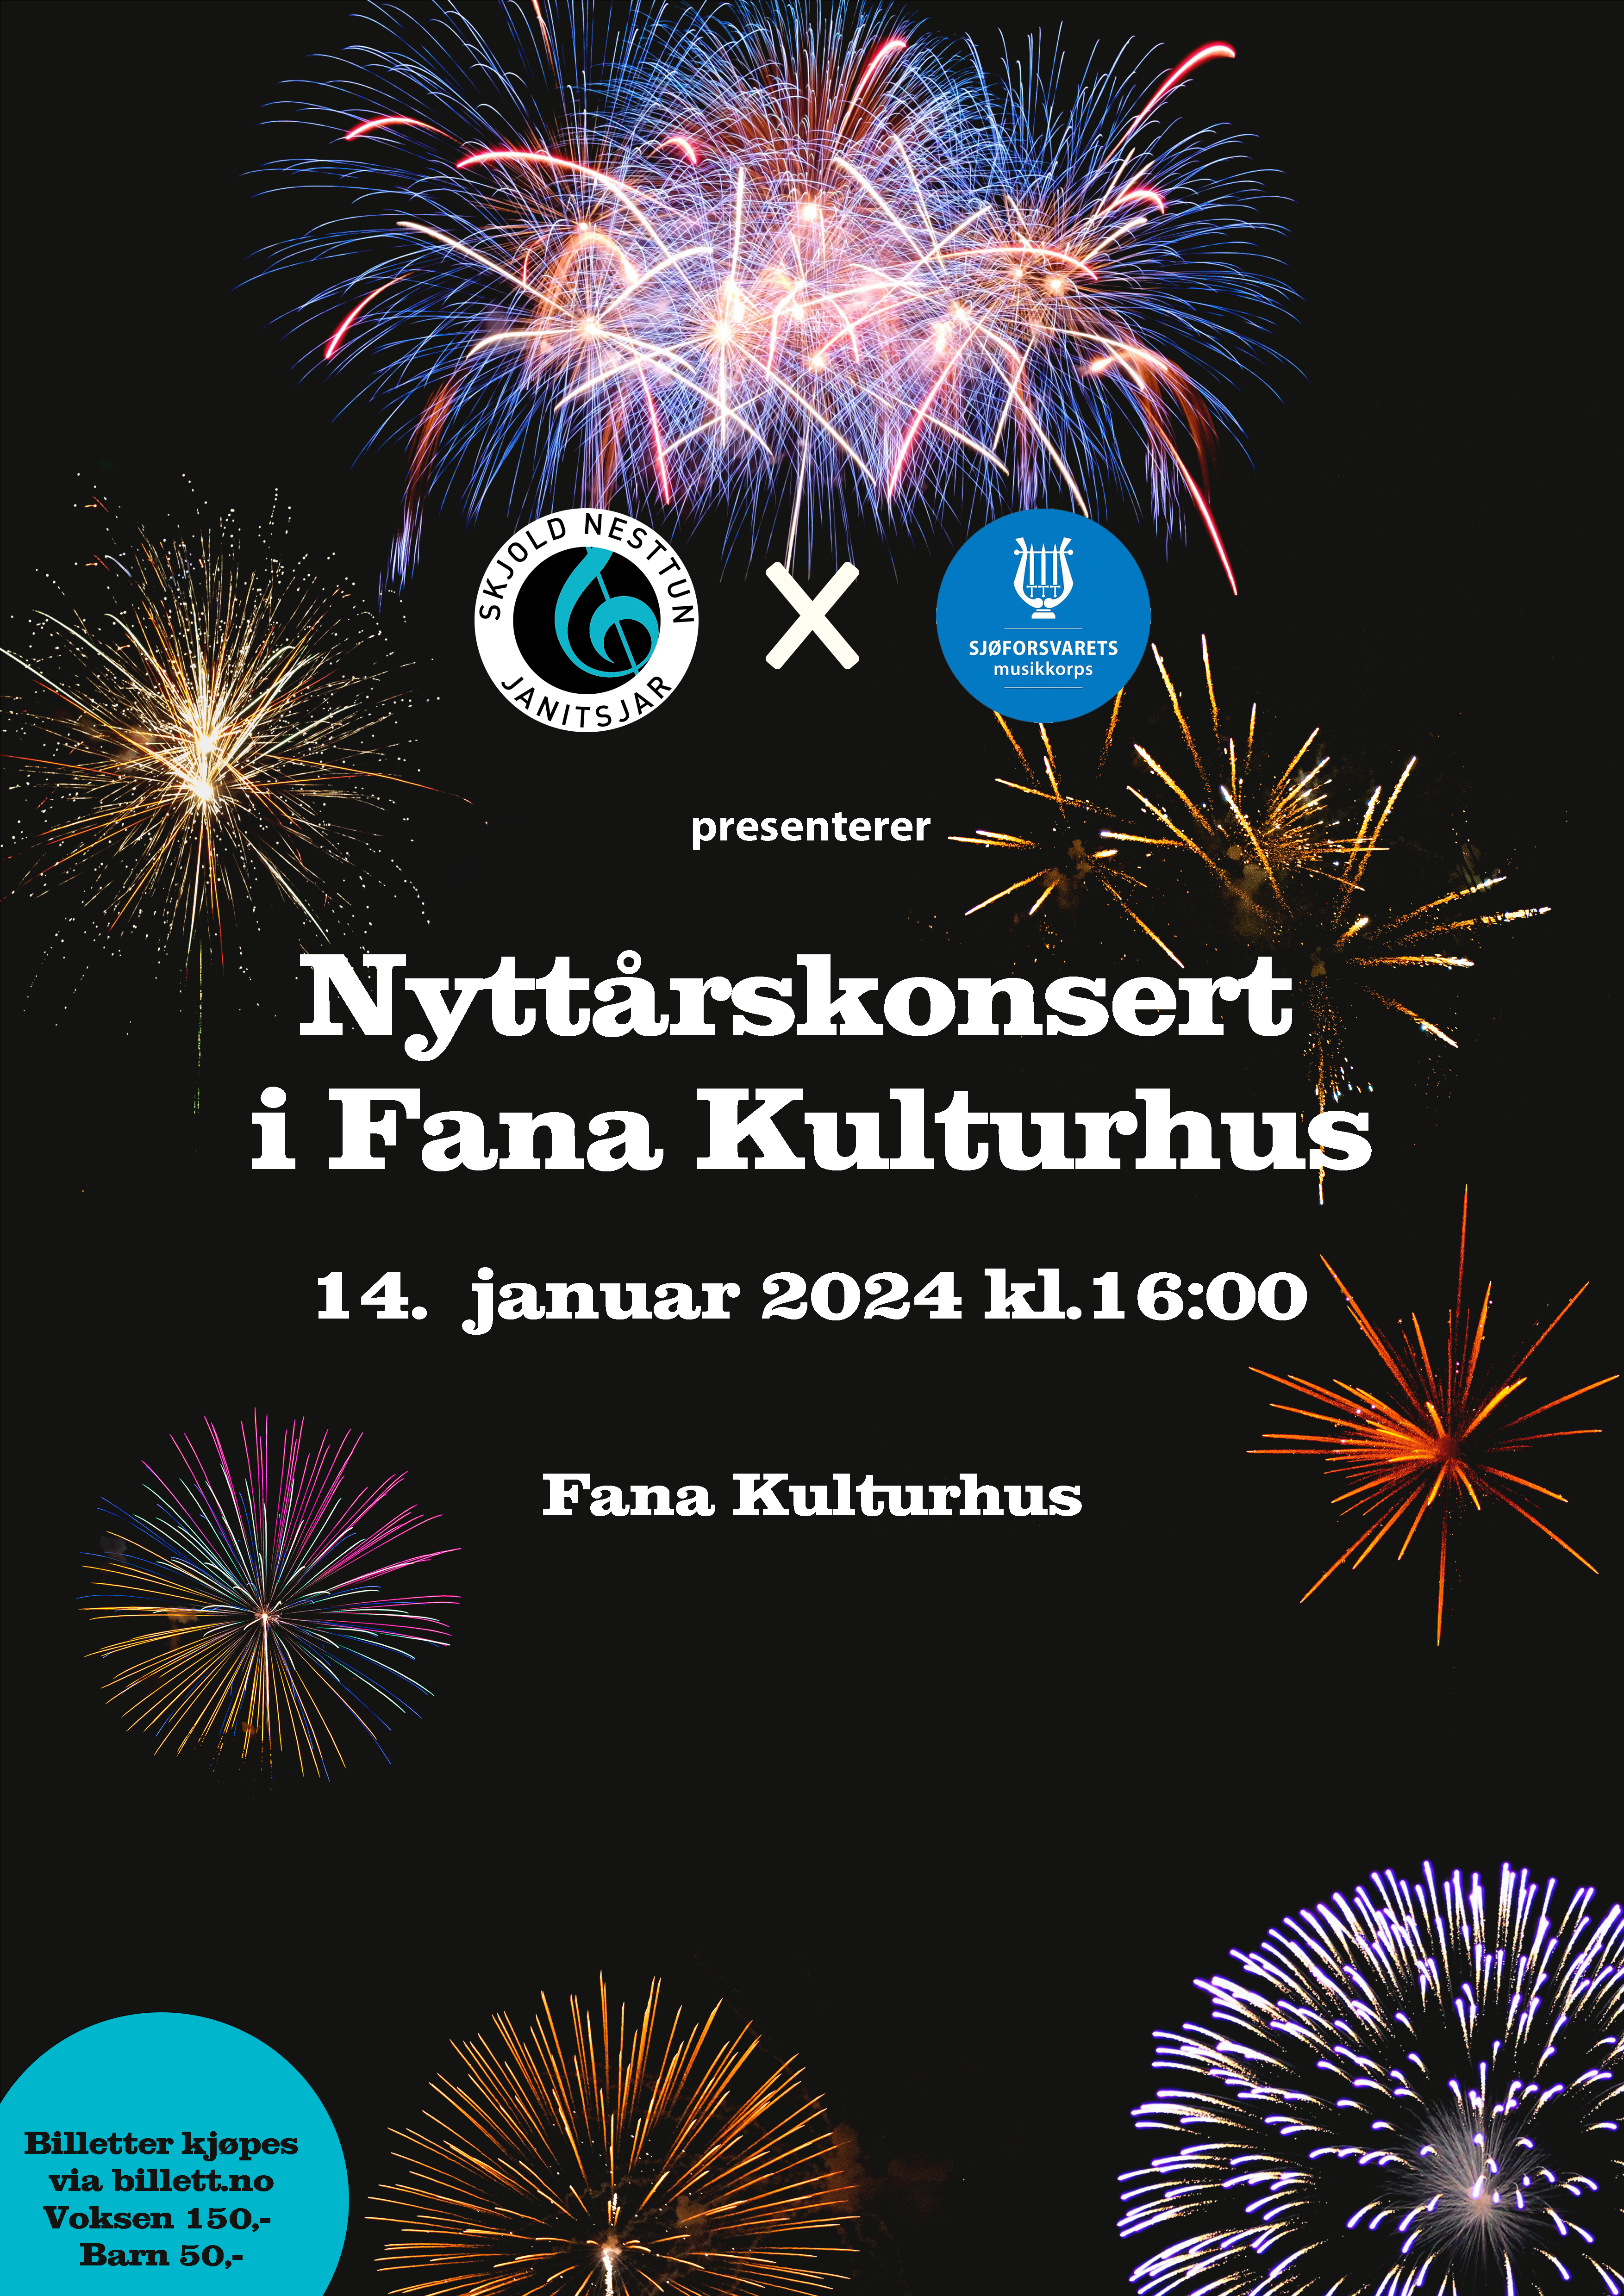 Nyttårskonsert i Fana Kulturhus